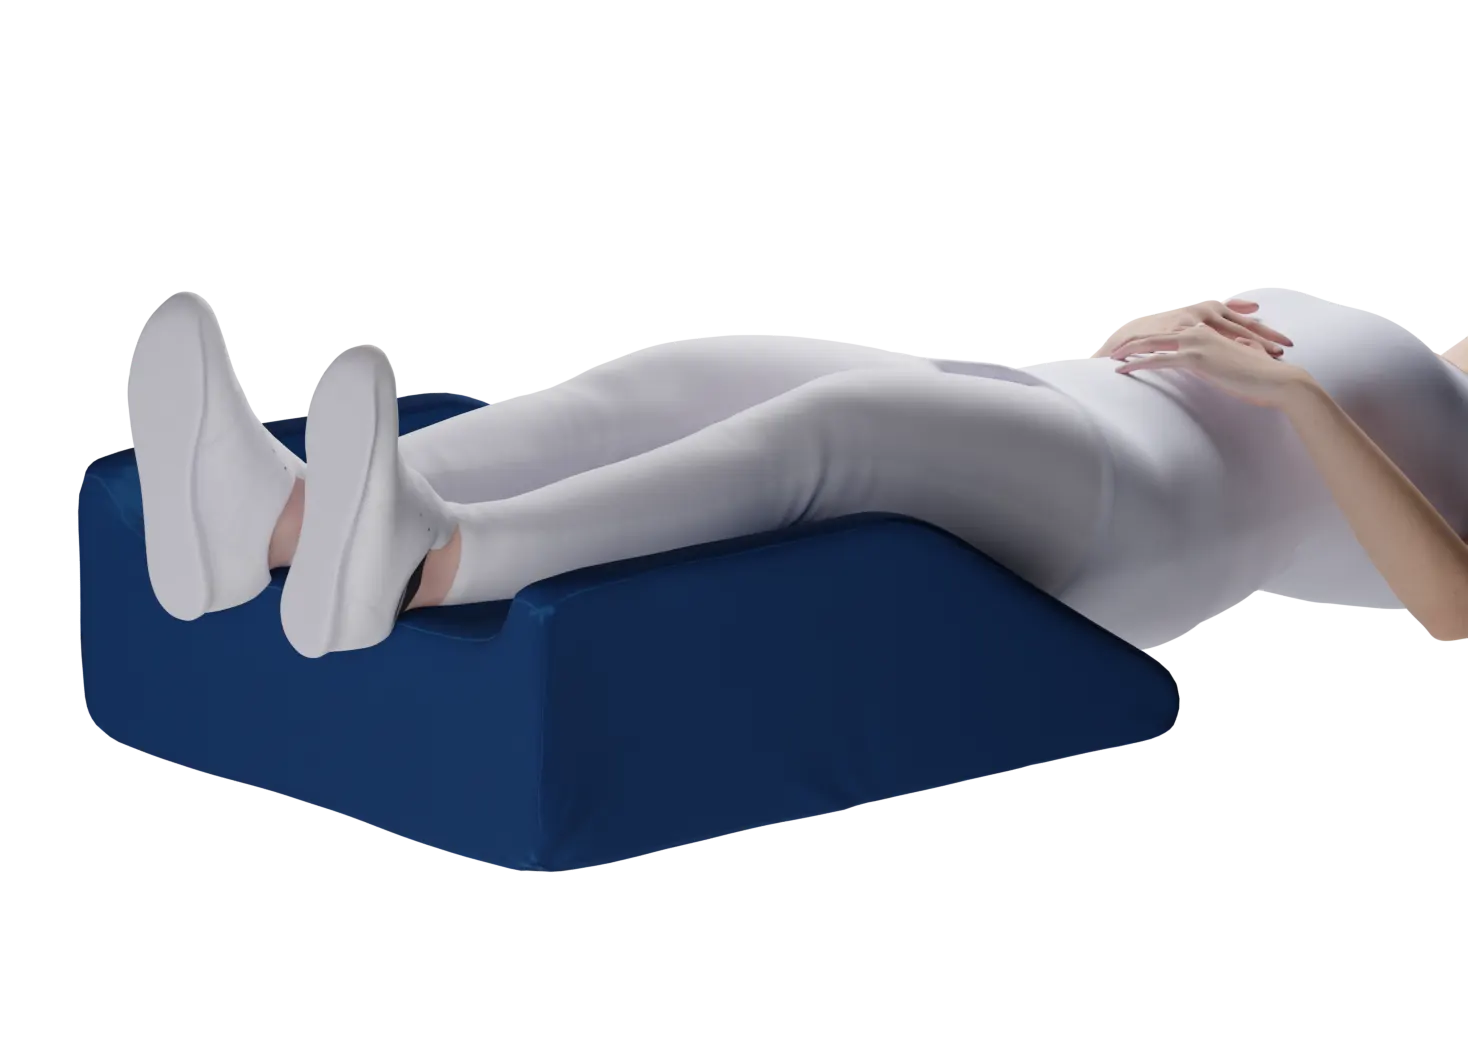 Beneficios de dormir con una almohada entre las piernas - Cadena Dial